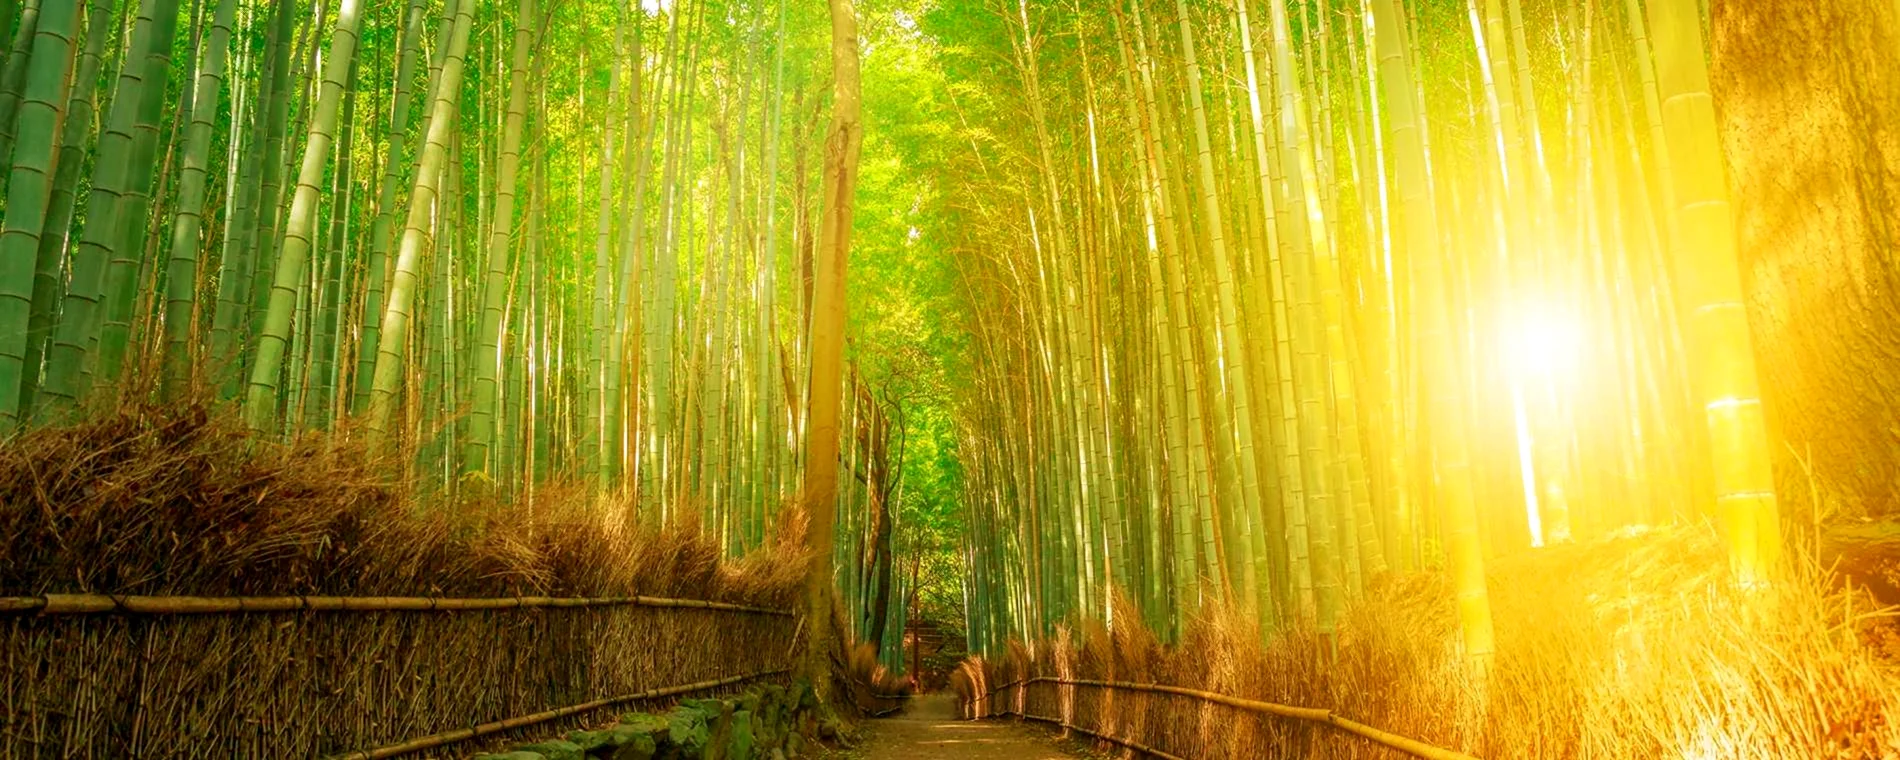 Солнечный бамбуковый лес